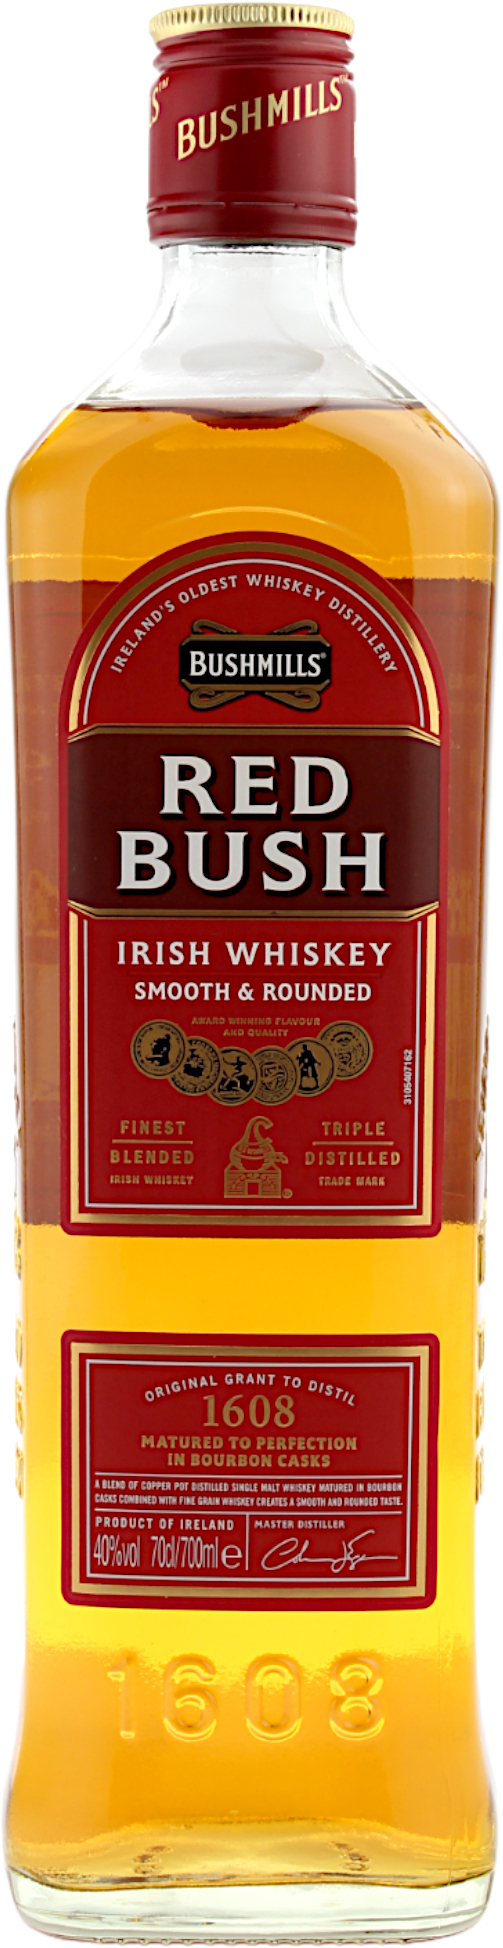 Bushmills Red Bush Irish Whiskey 40.0% 0,7l